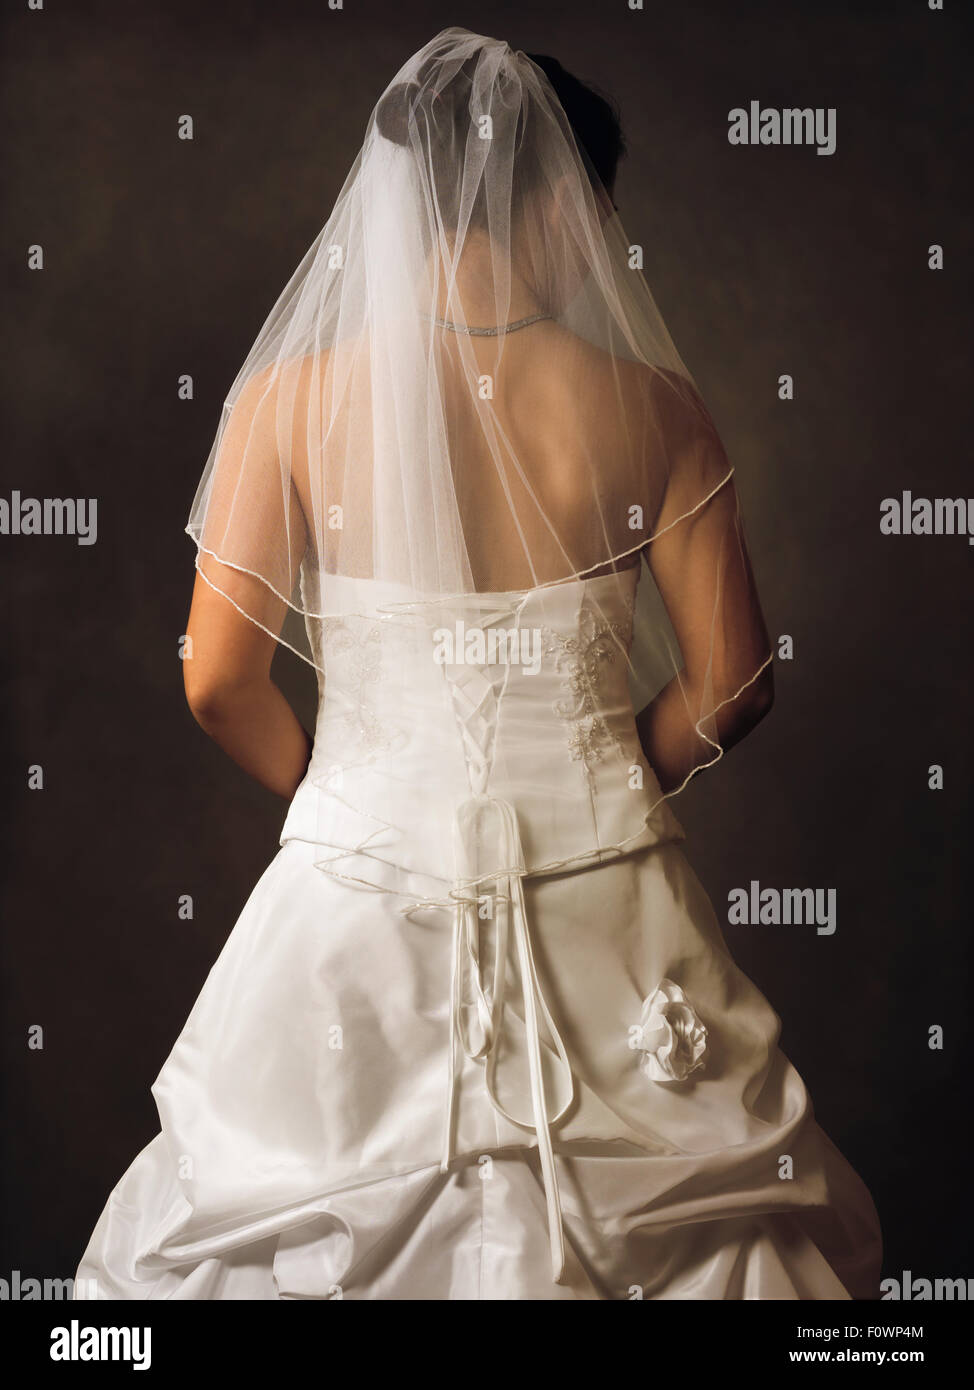 Jeune femme en robe de mariage avec son dos à l'appareil photo Banque D'Images